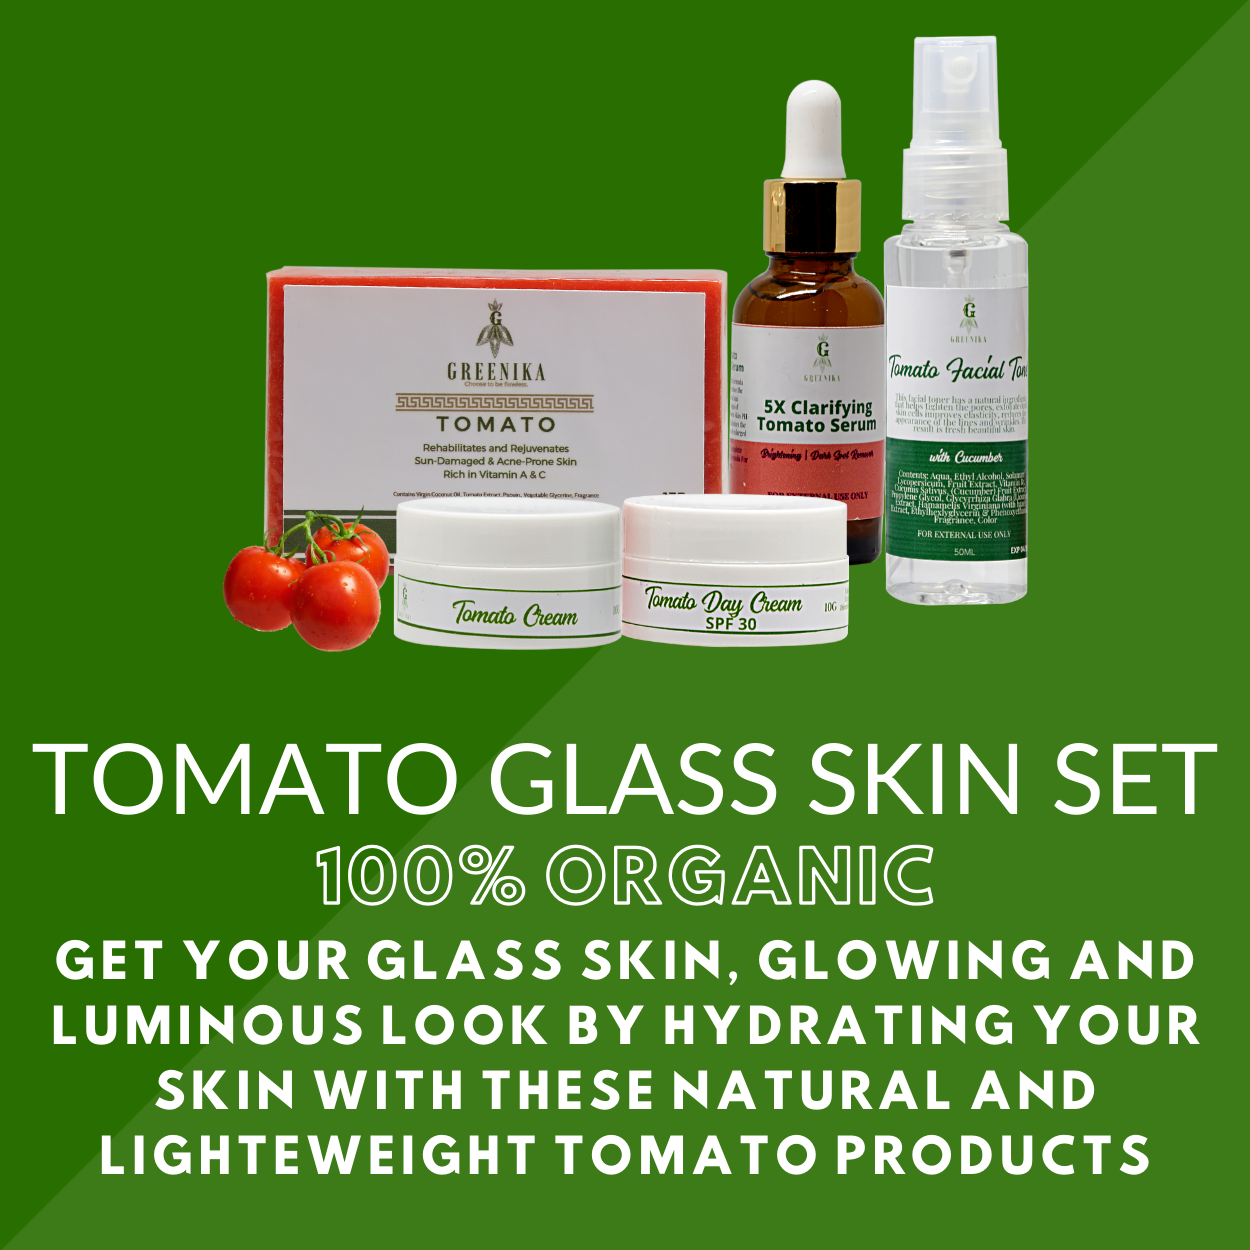 Greenika Tomato Glass Skin Set